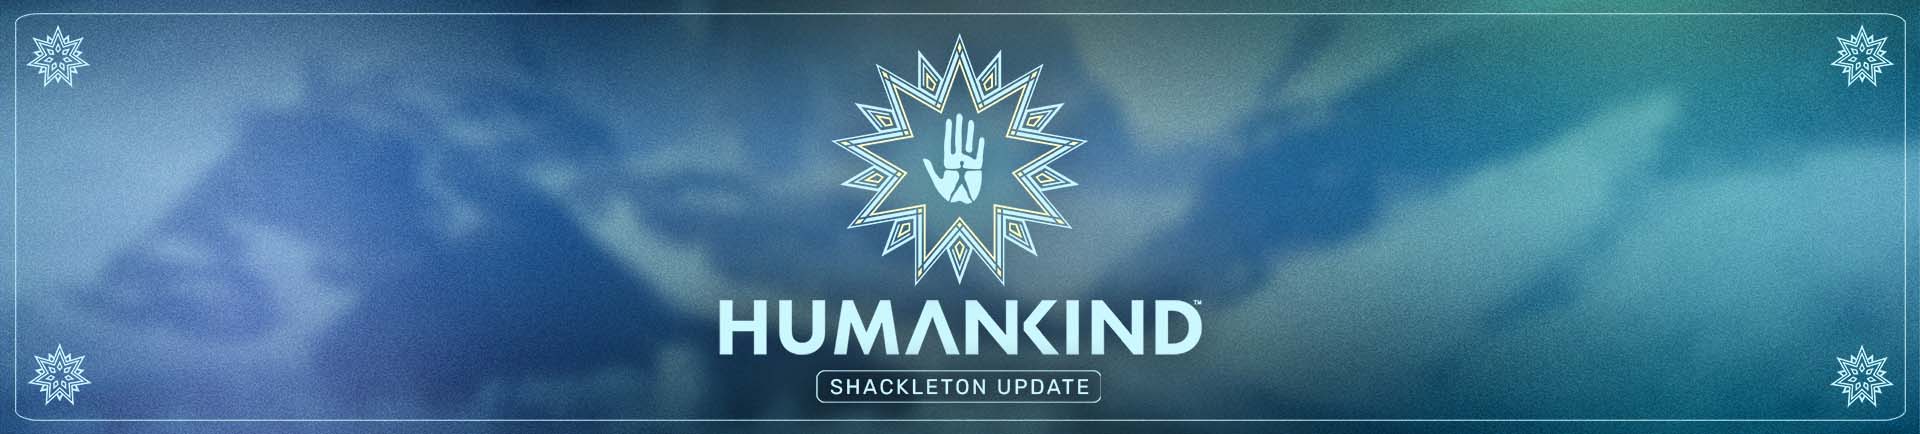 HK-Shackleton-Update_Banner.jpg